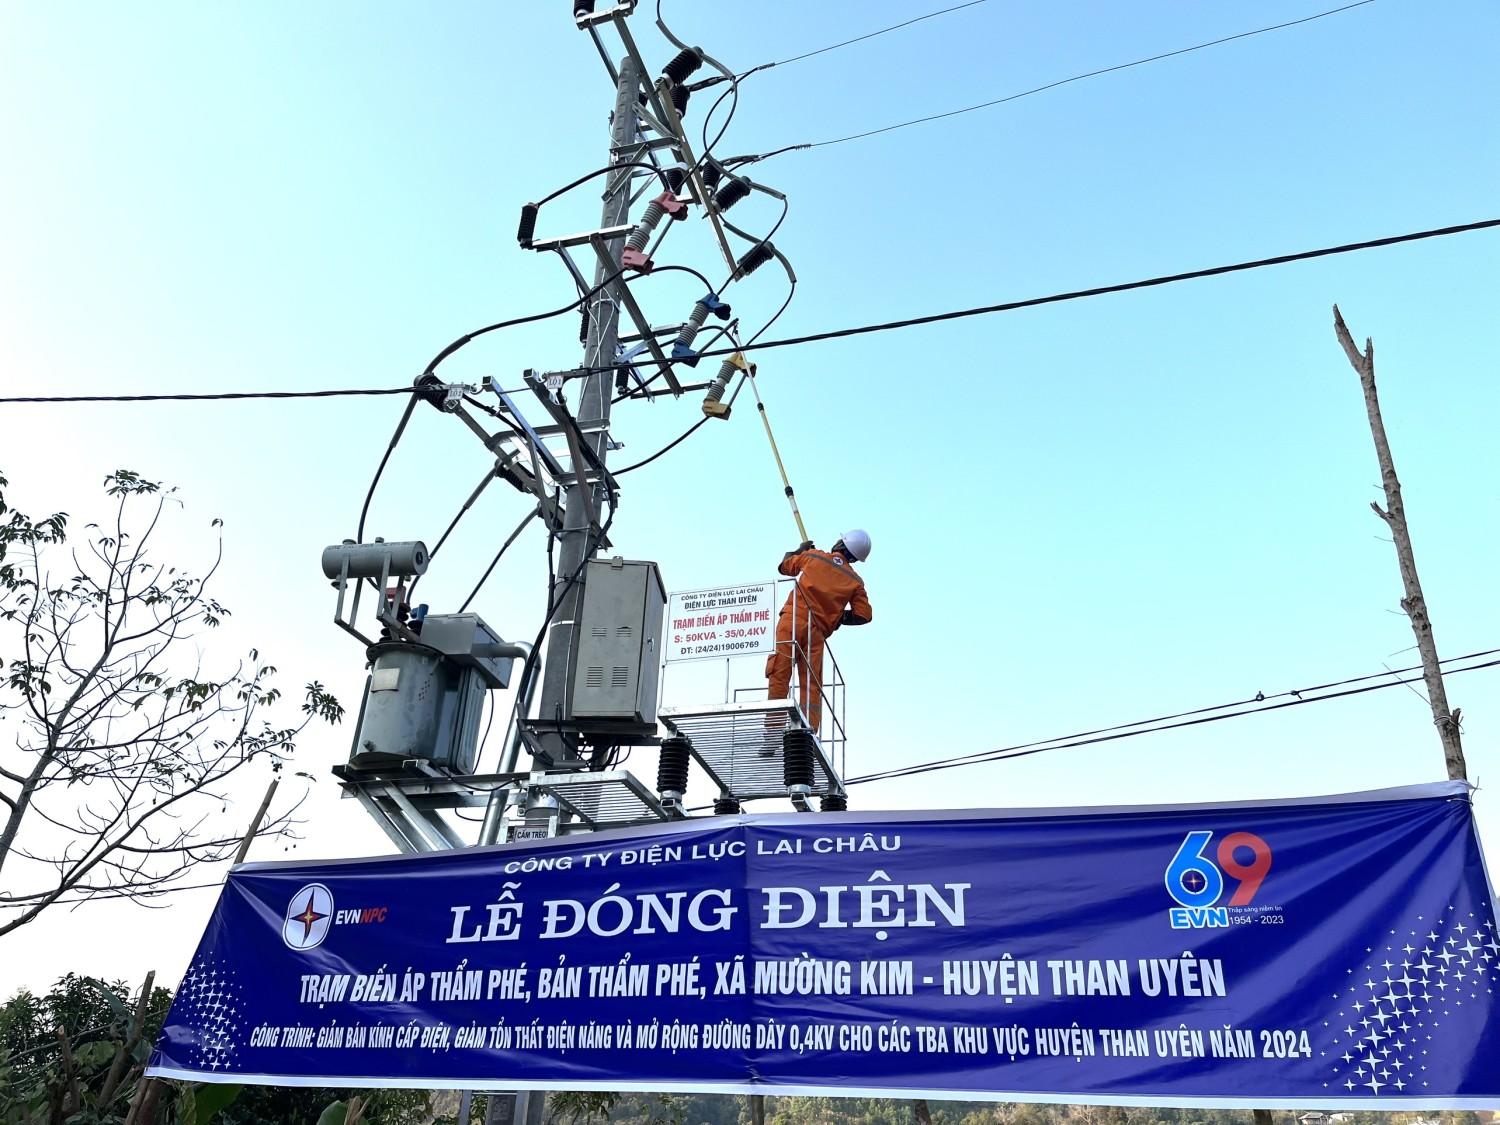 Công ty Điện lực Lai Châu tổ chức Lễ đóng điện trạm biến áp bản Thẩm Phé xã Mường Kim